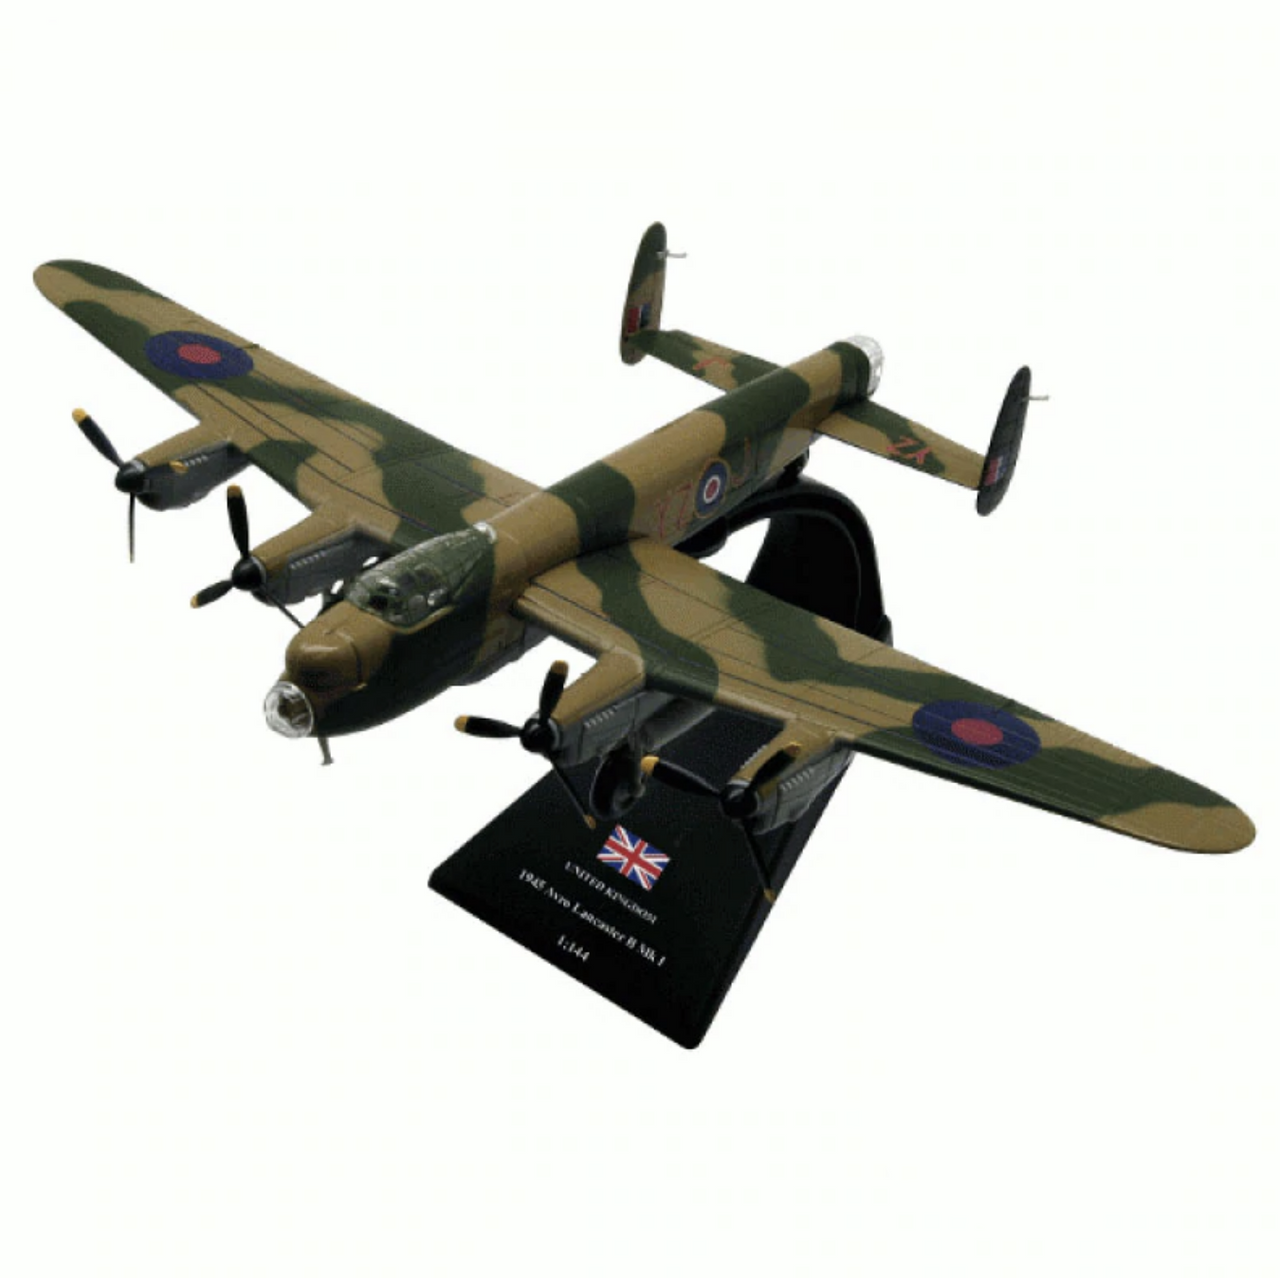 1/144 Scale UK 1945 Avro Lancaster B MKI Heavy Bomber Airplane Model